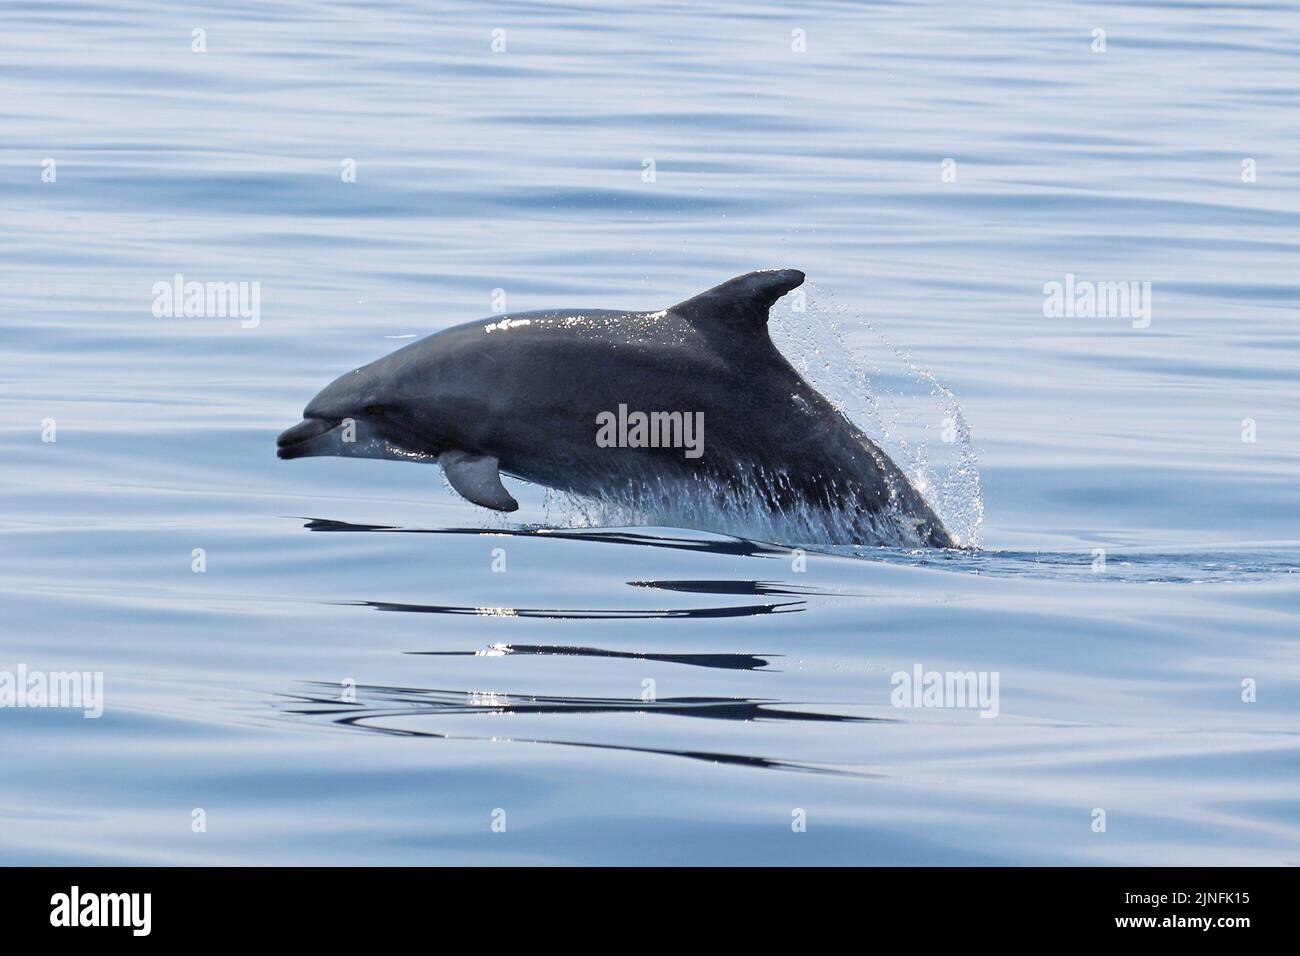 Dolphin watching near Taranto, Italy Stock Photo